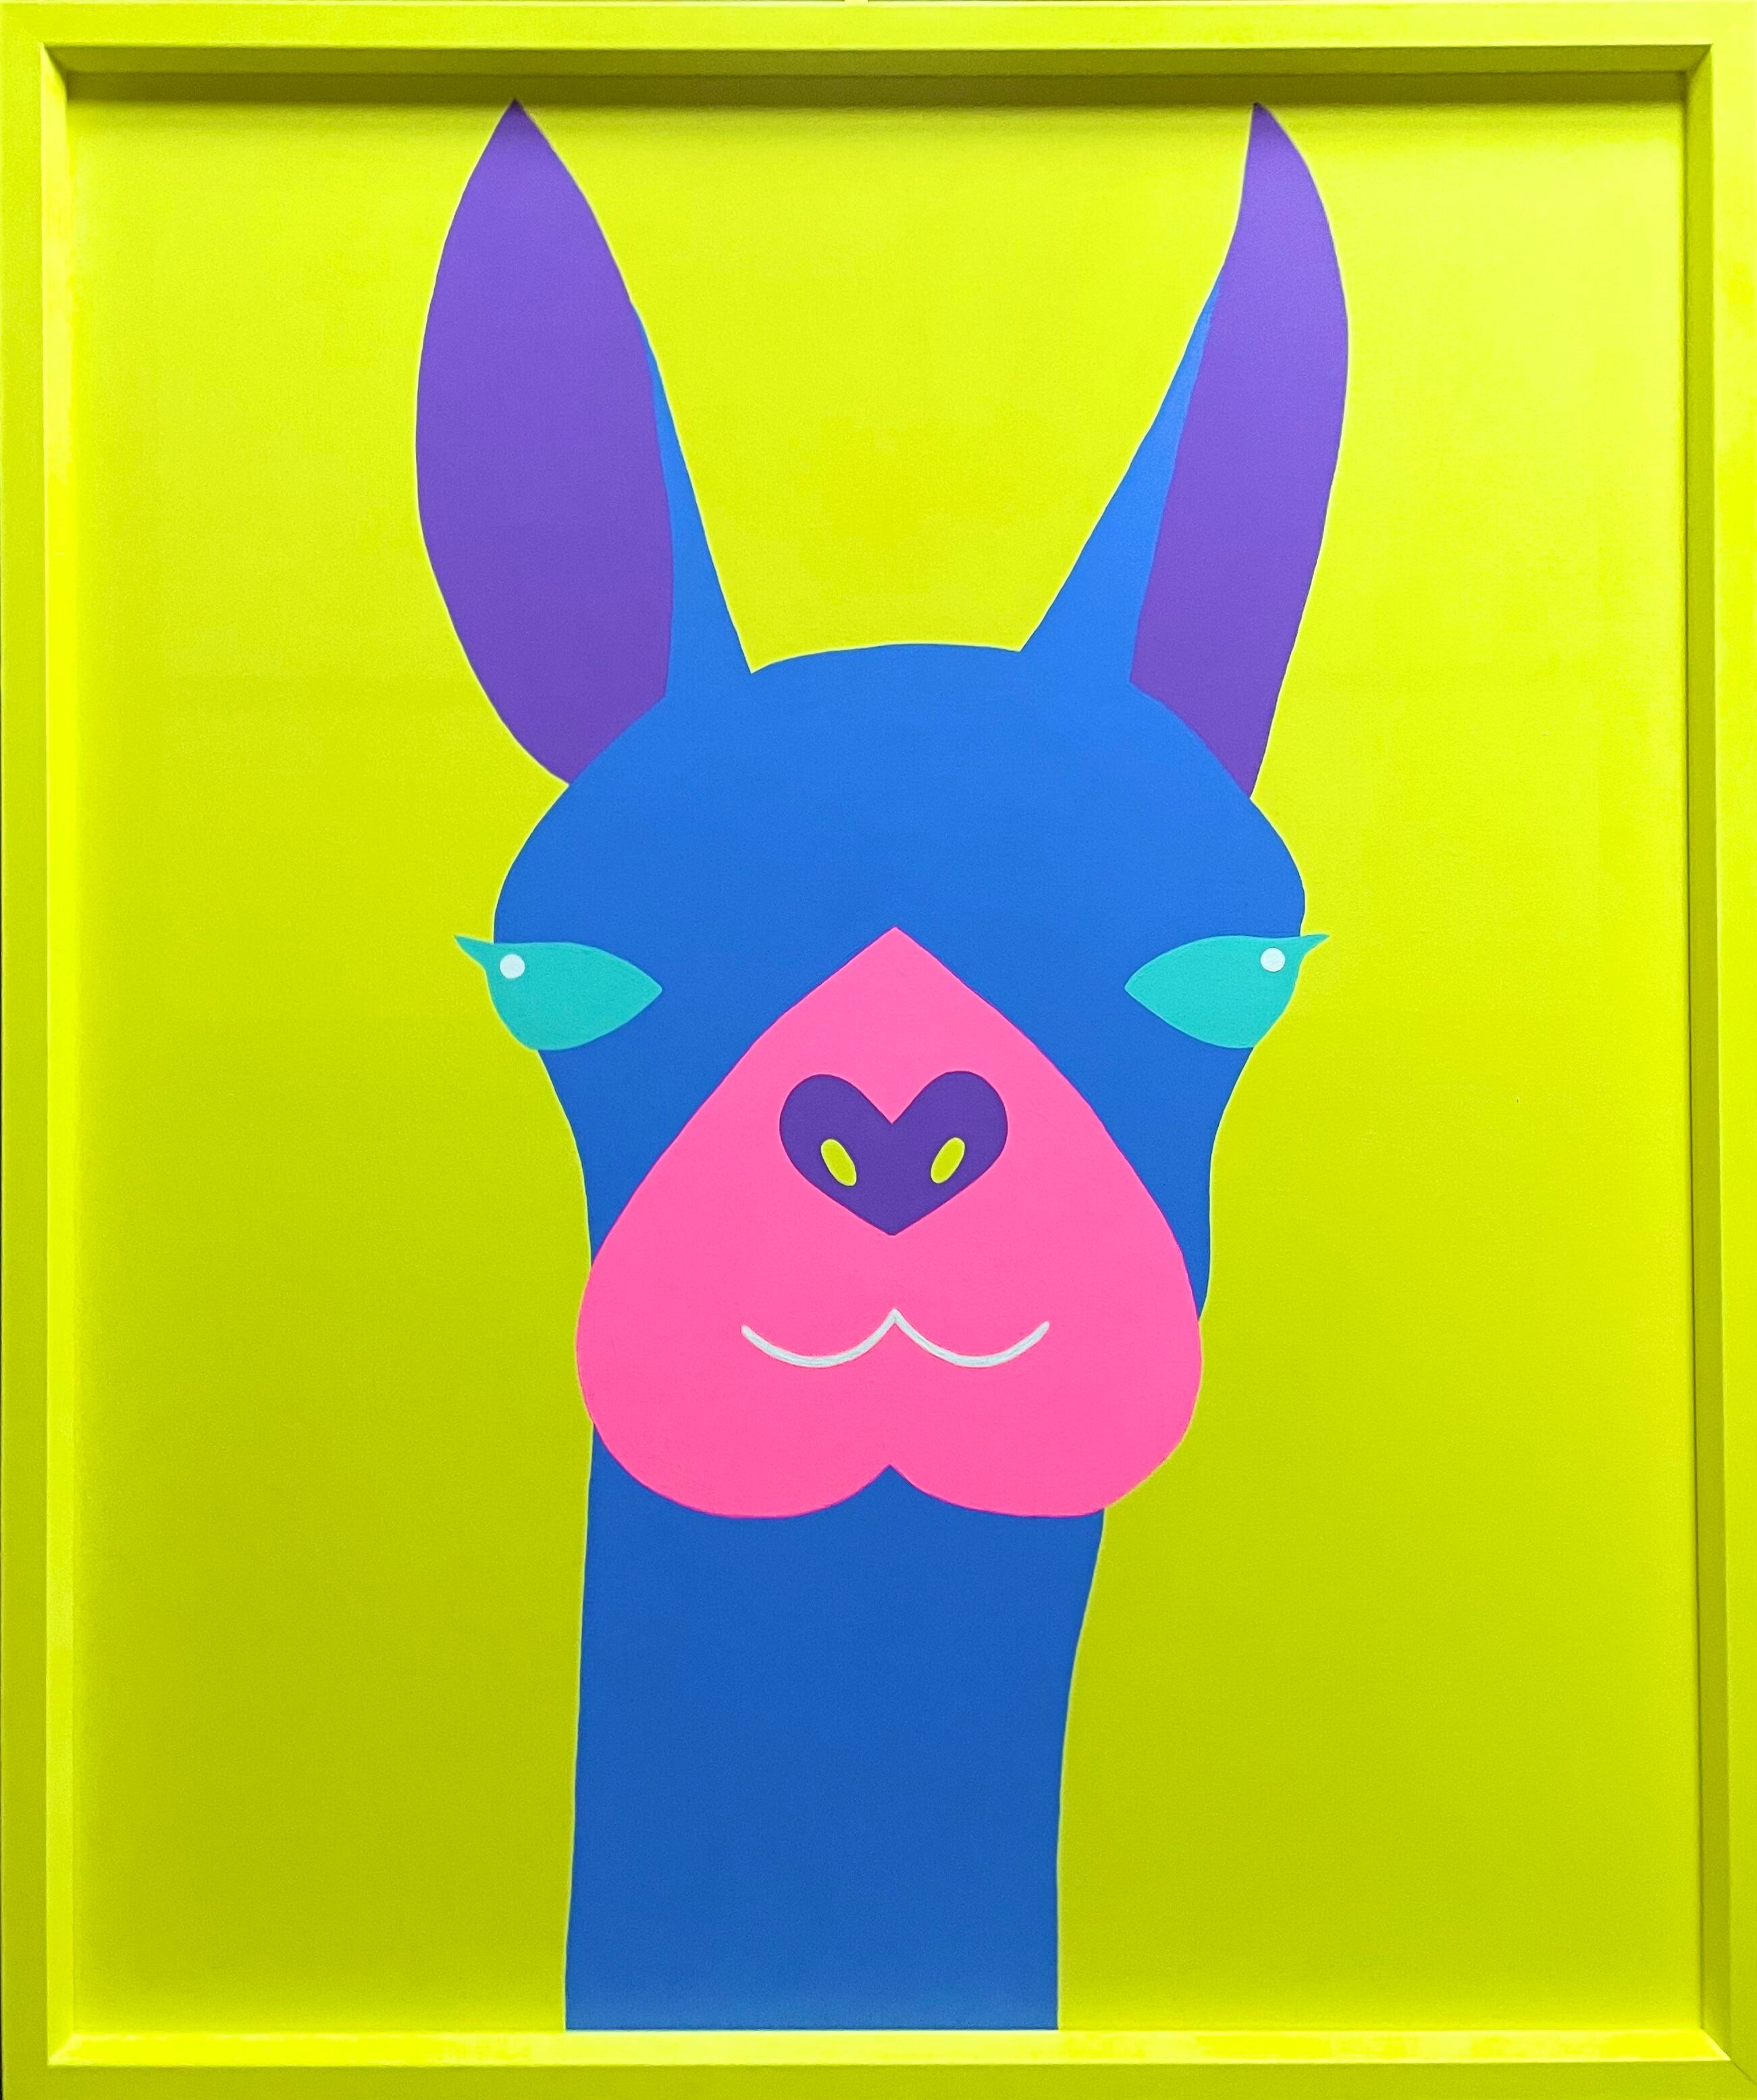 Yuka Izuhara 原画作品 【The Llama】 (F20号)  明石家さんま画廊 出展作品